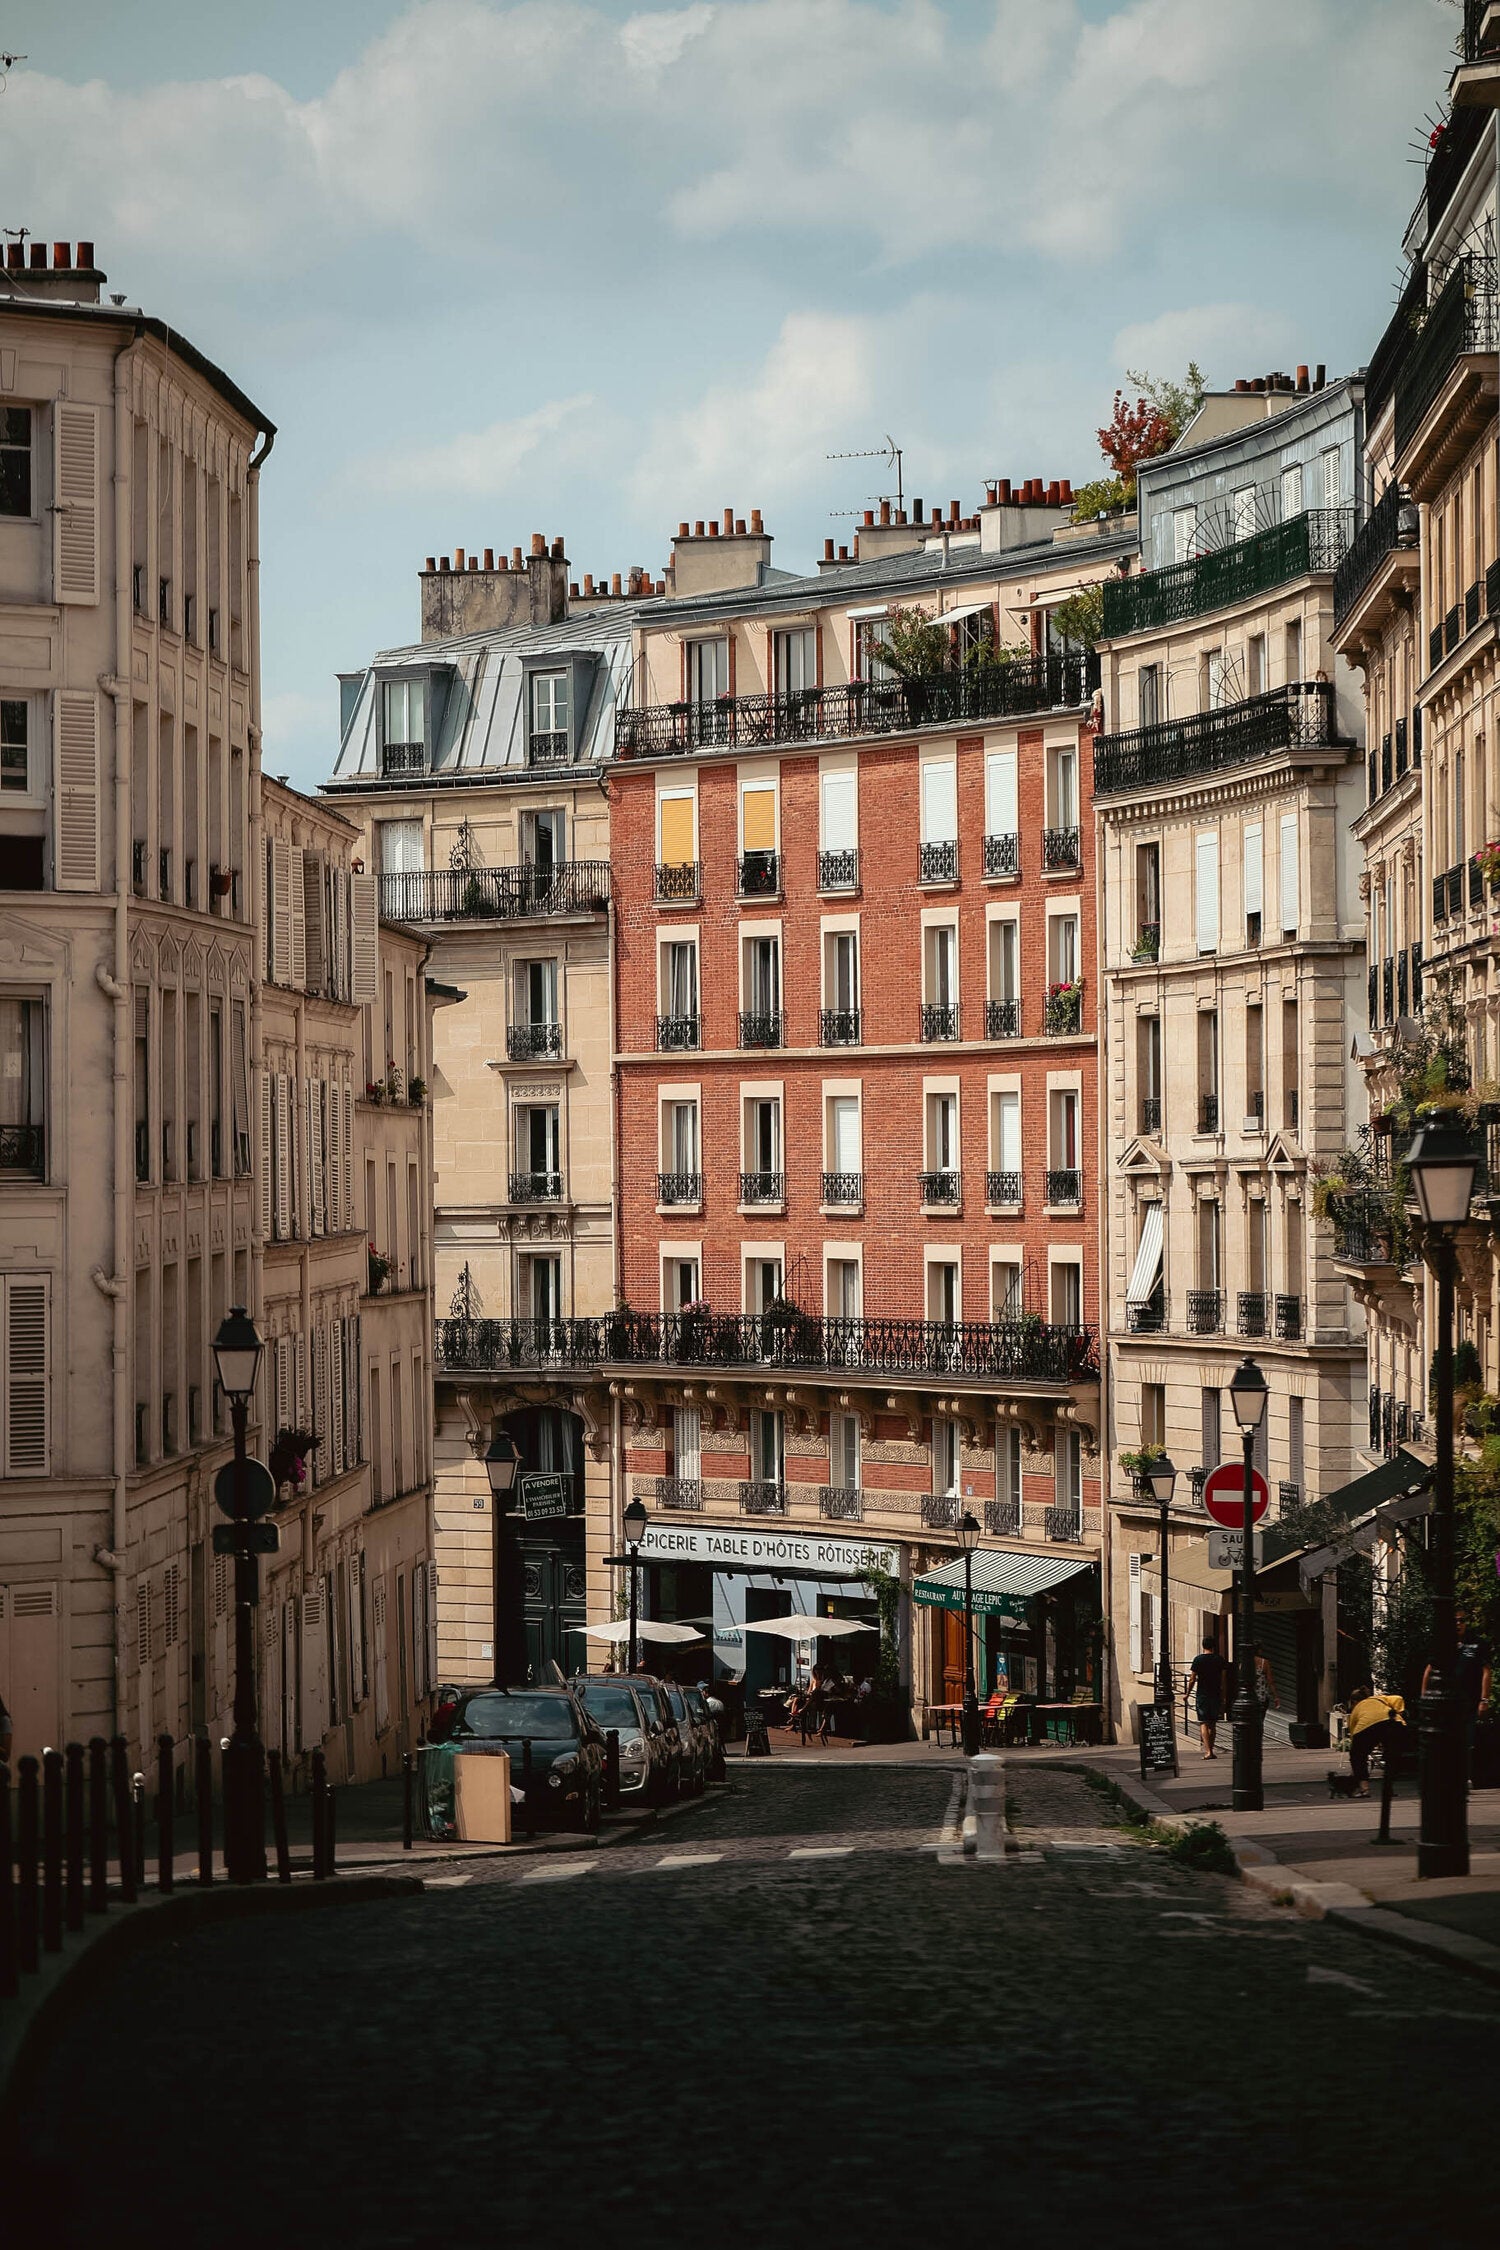 Parisian Street